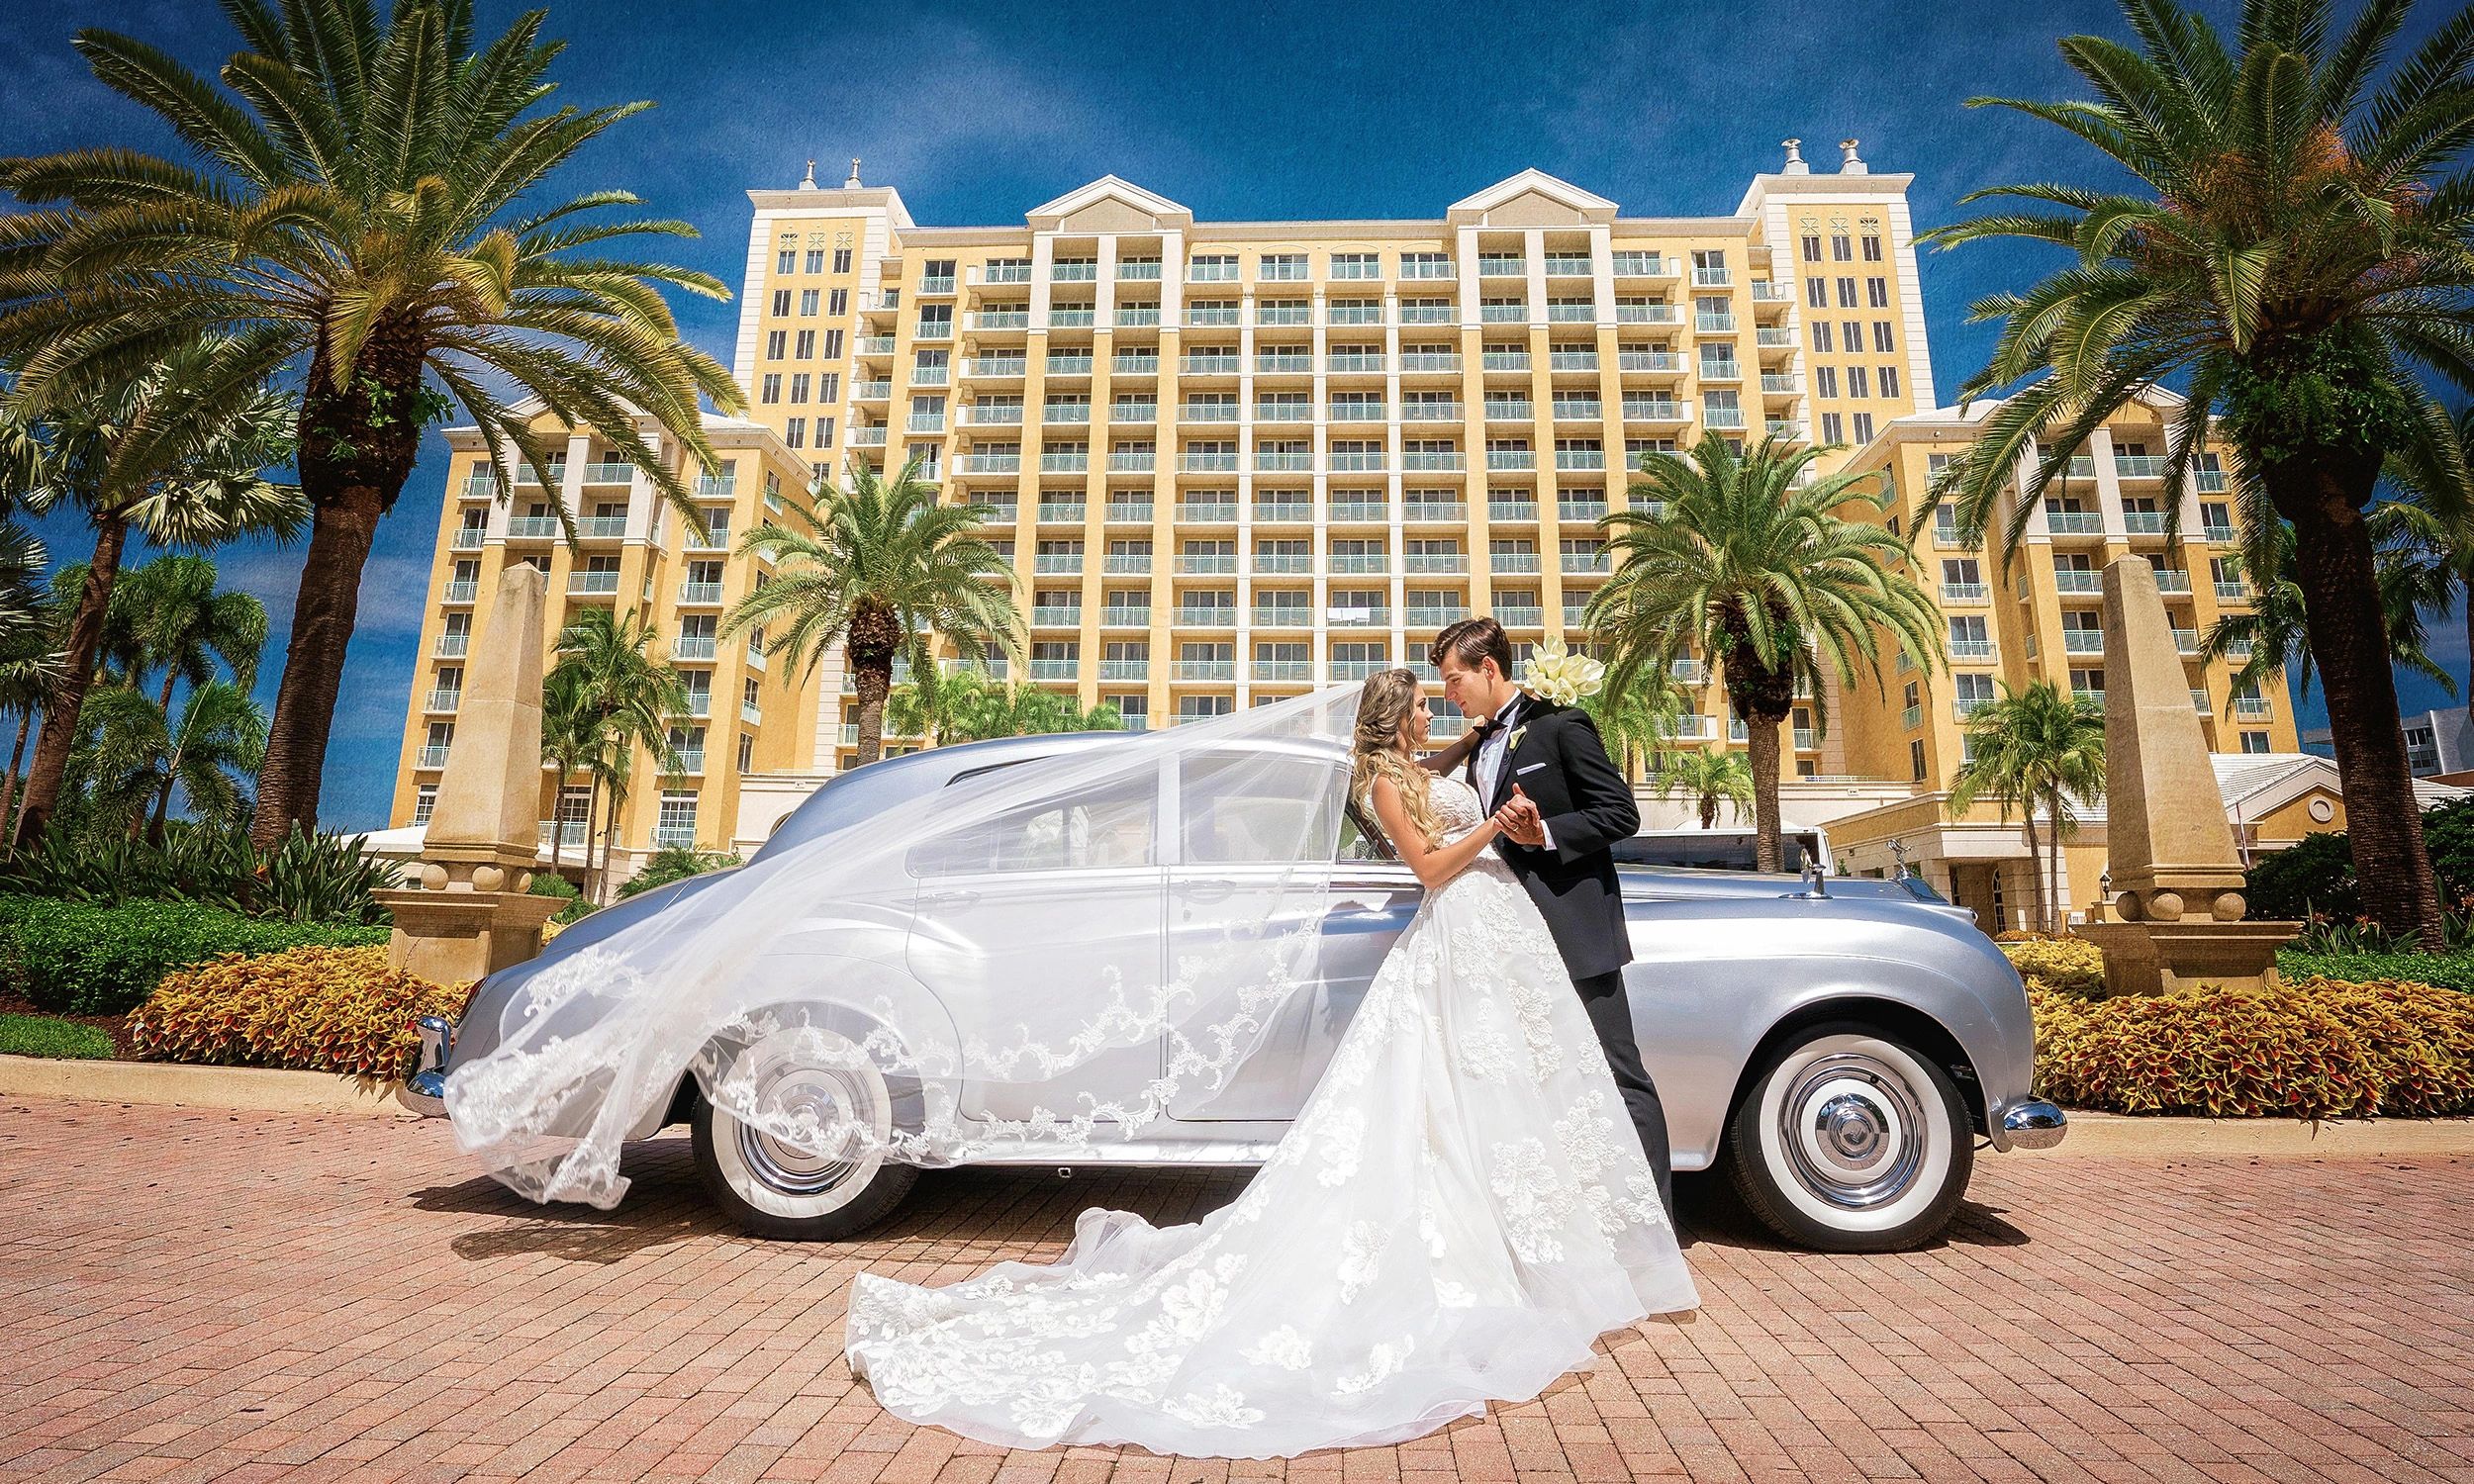 1960 Rolls Royce silver wedding classic car. Wedding at the Ritz Carlton in Miami 